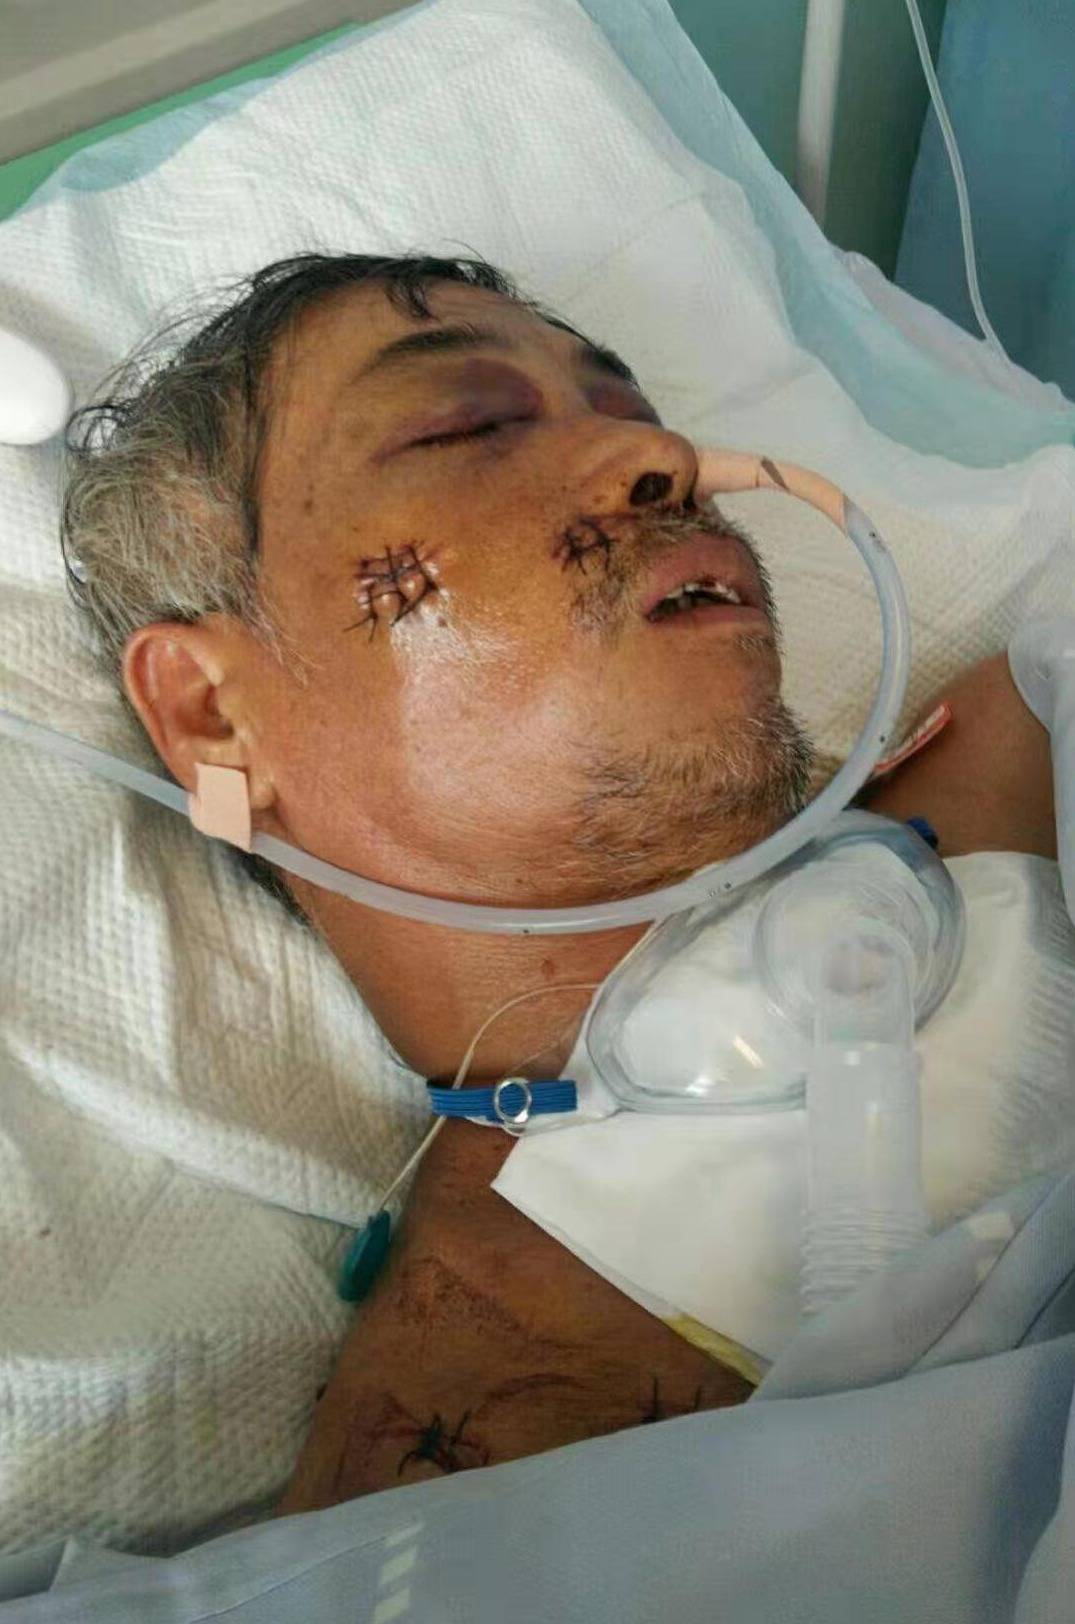 一场车祸让59岁父亲重伤在院南宁市孝子为父救助求大家救救我的父亲